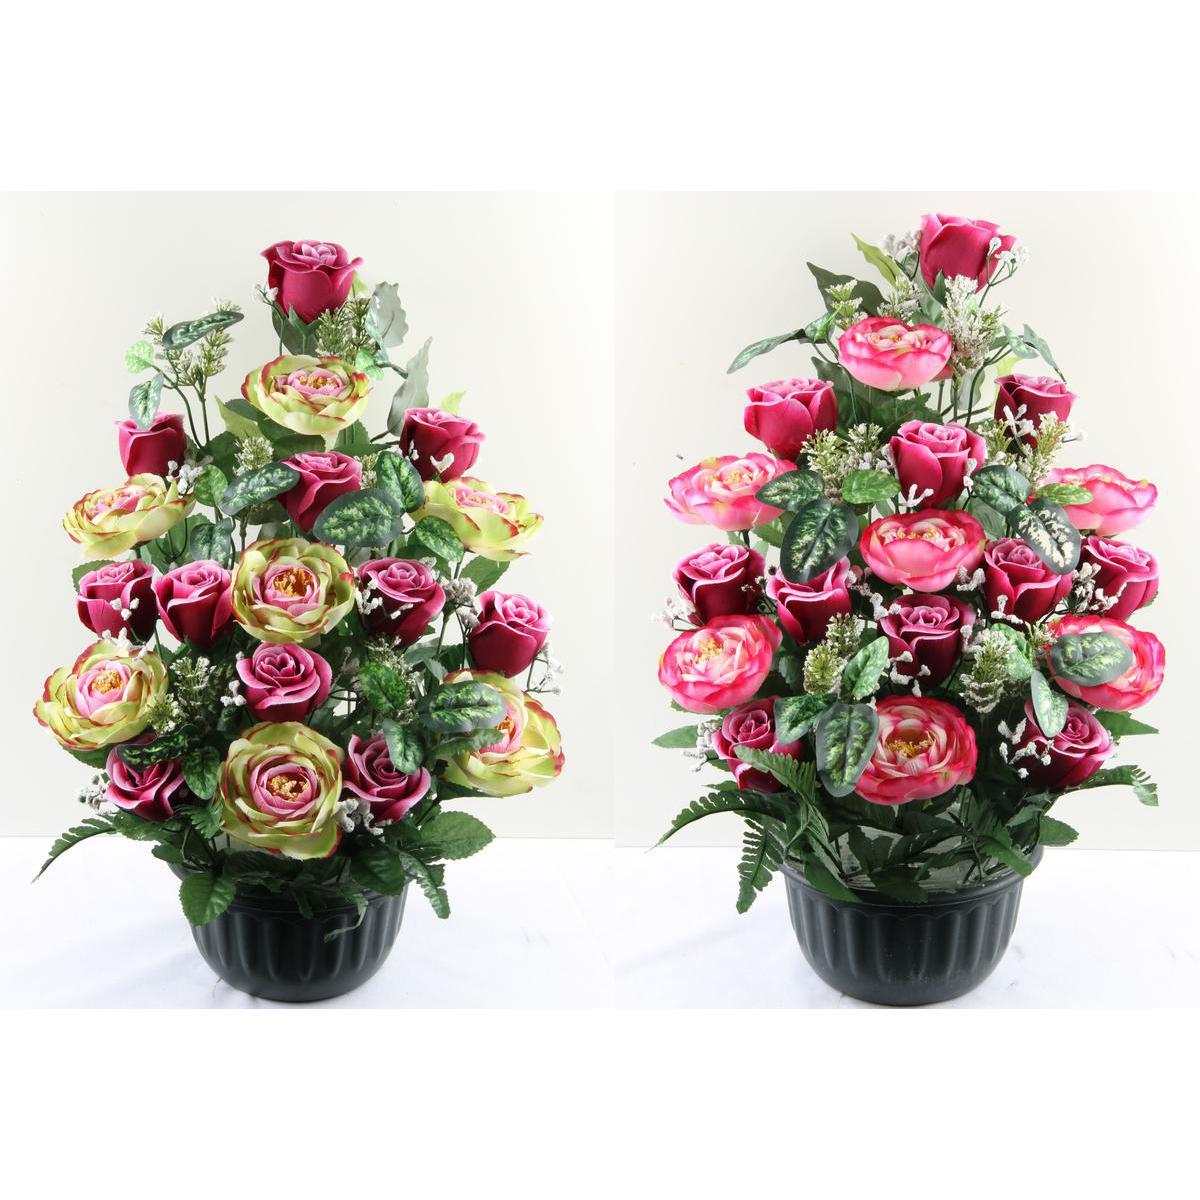 Composition de roses et de renoncules - Polyester - H 46 cm - 2 coloris au choix